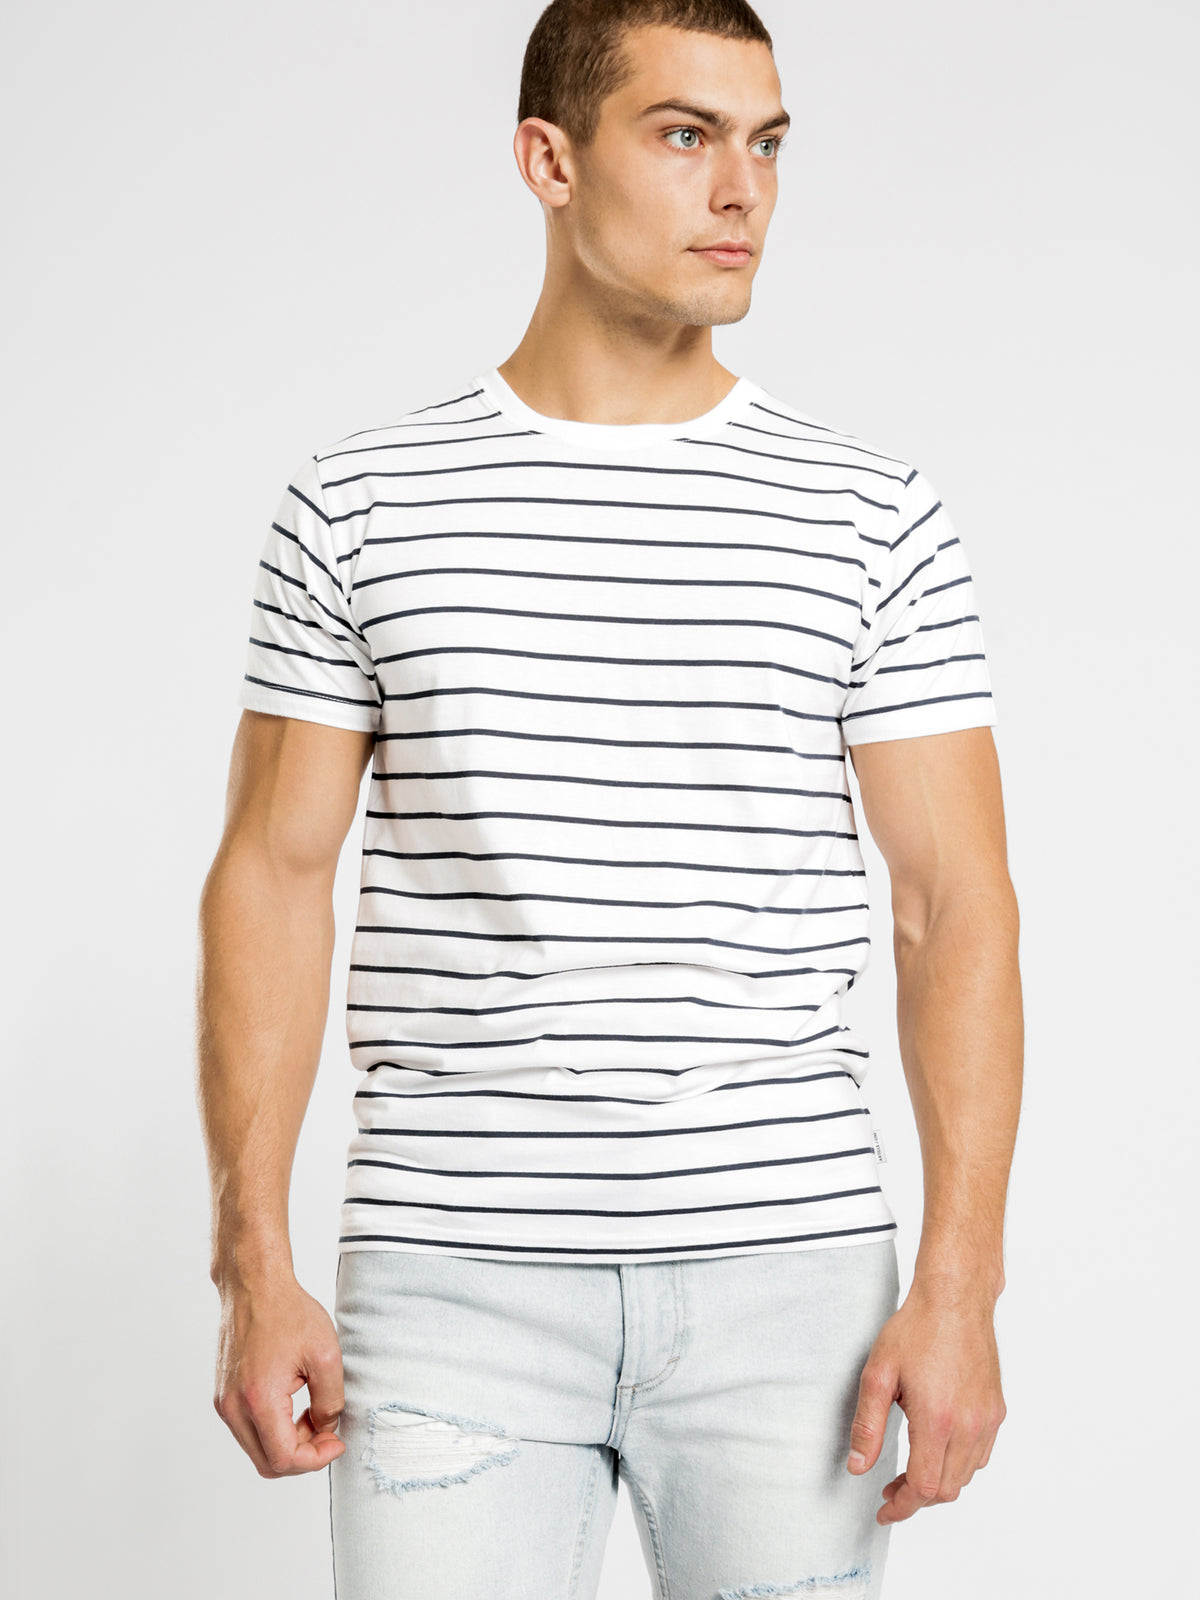 Casper T-Shirt in Navy &amp; White Stripe